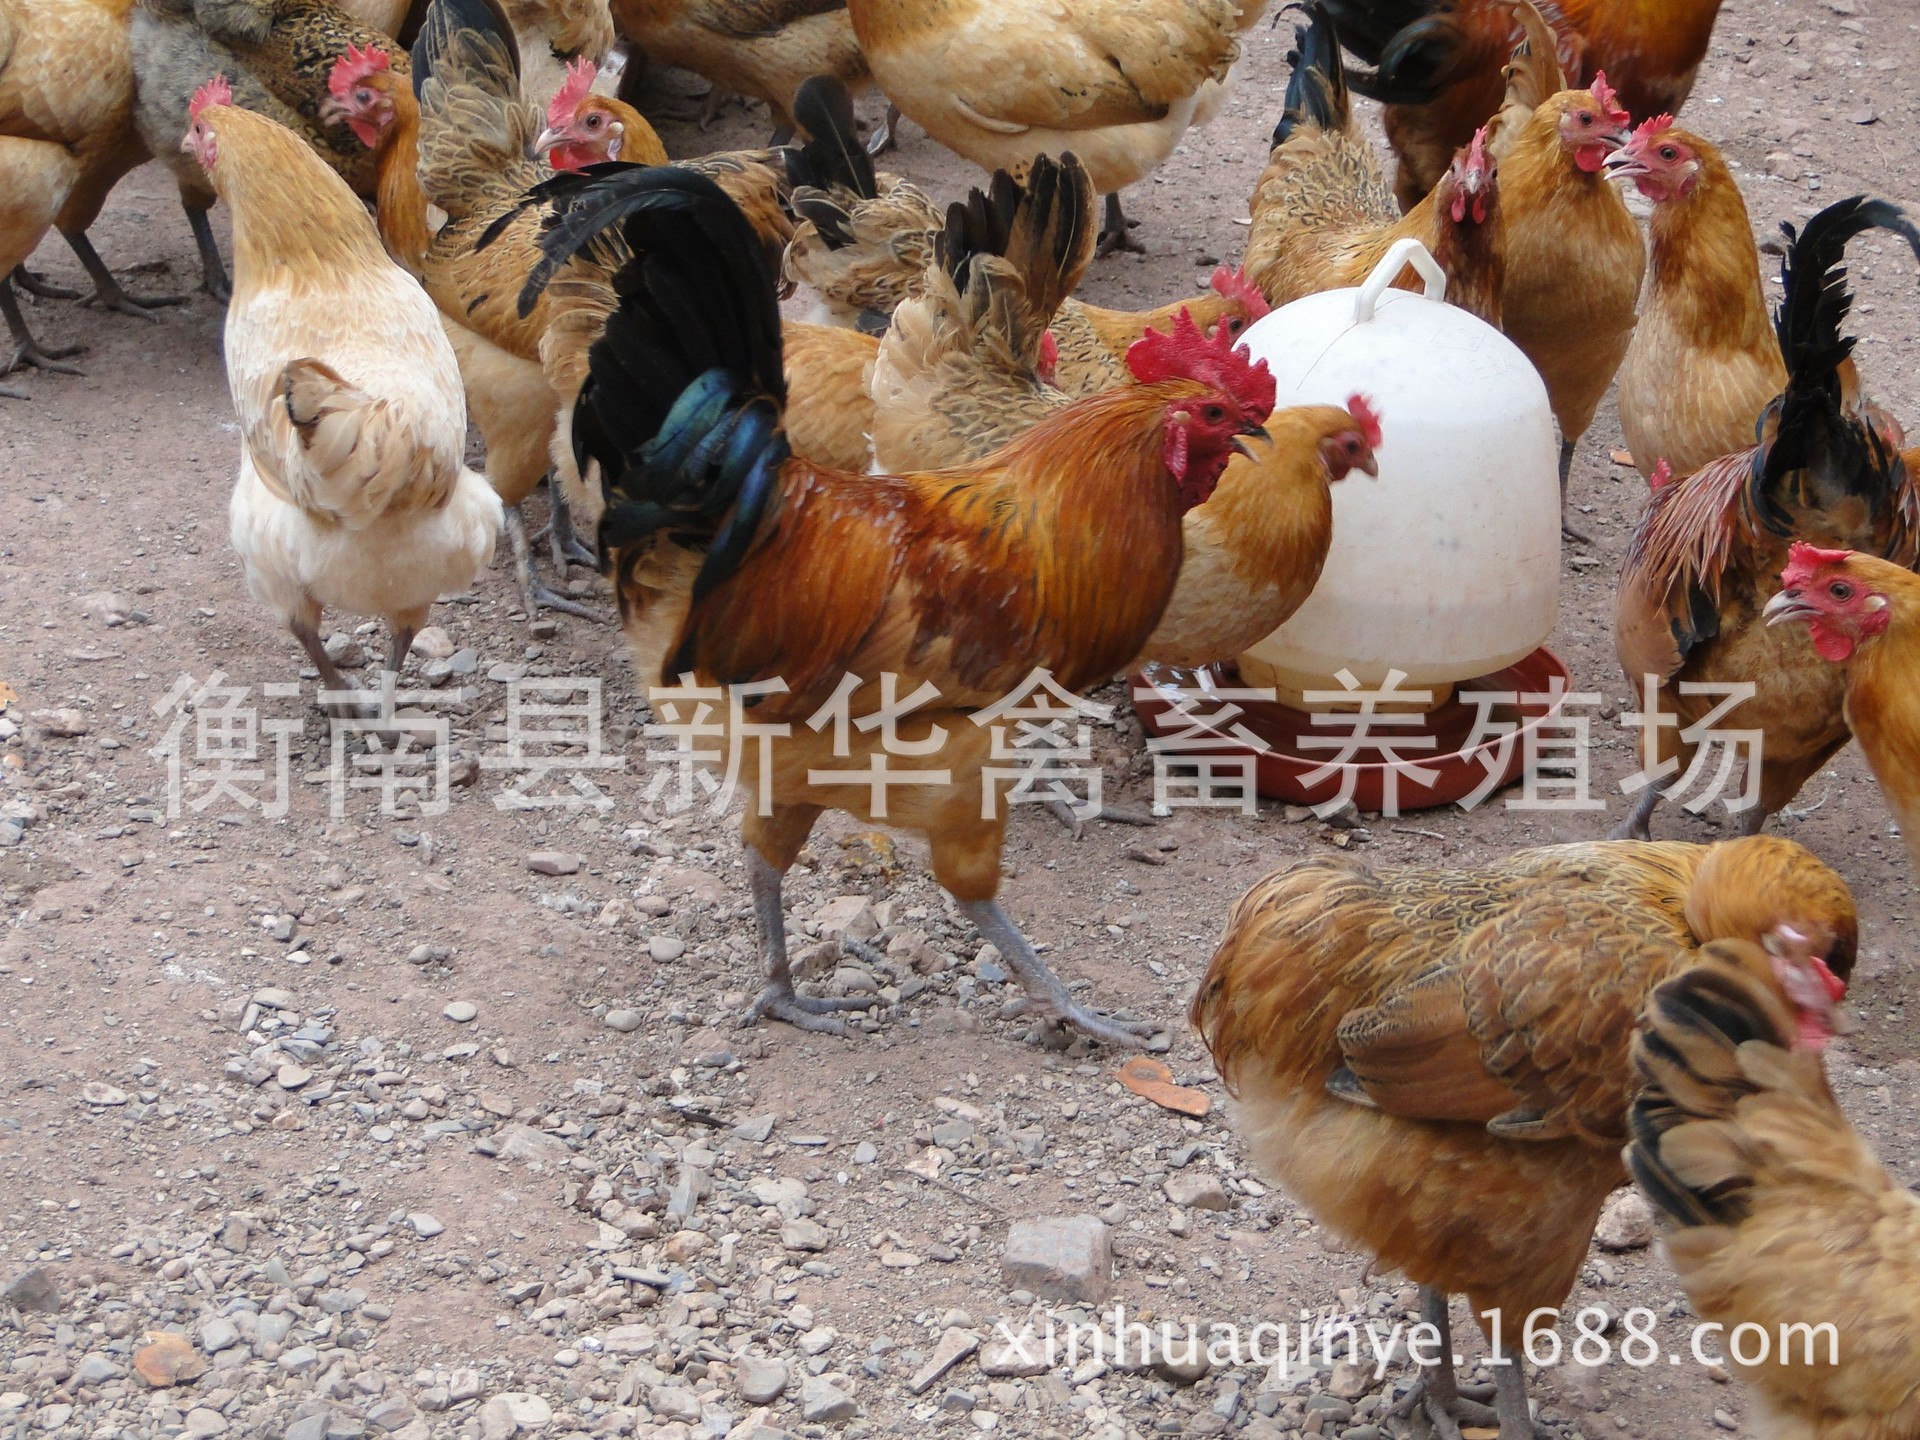 新华禽畜厂家直销正宗农家散养土鸡下单现杀包邮保鲜商品土鸡示例图5